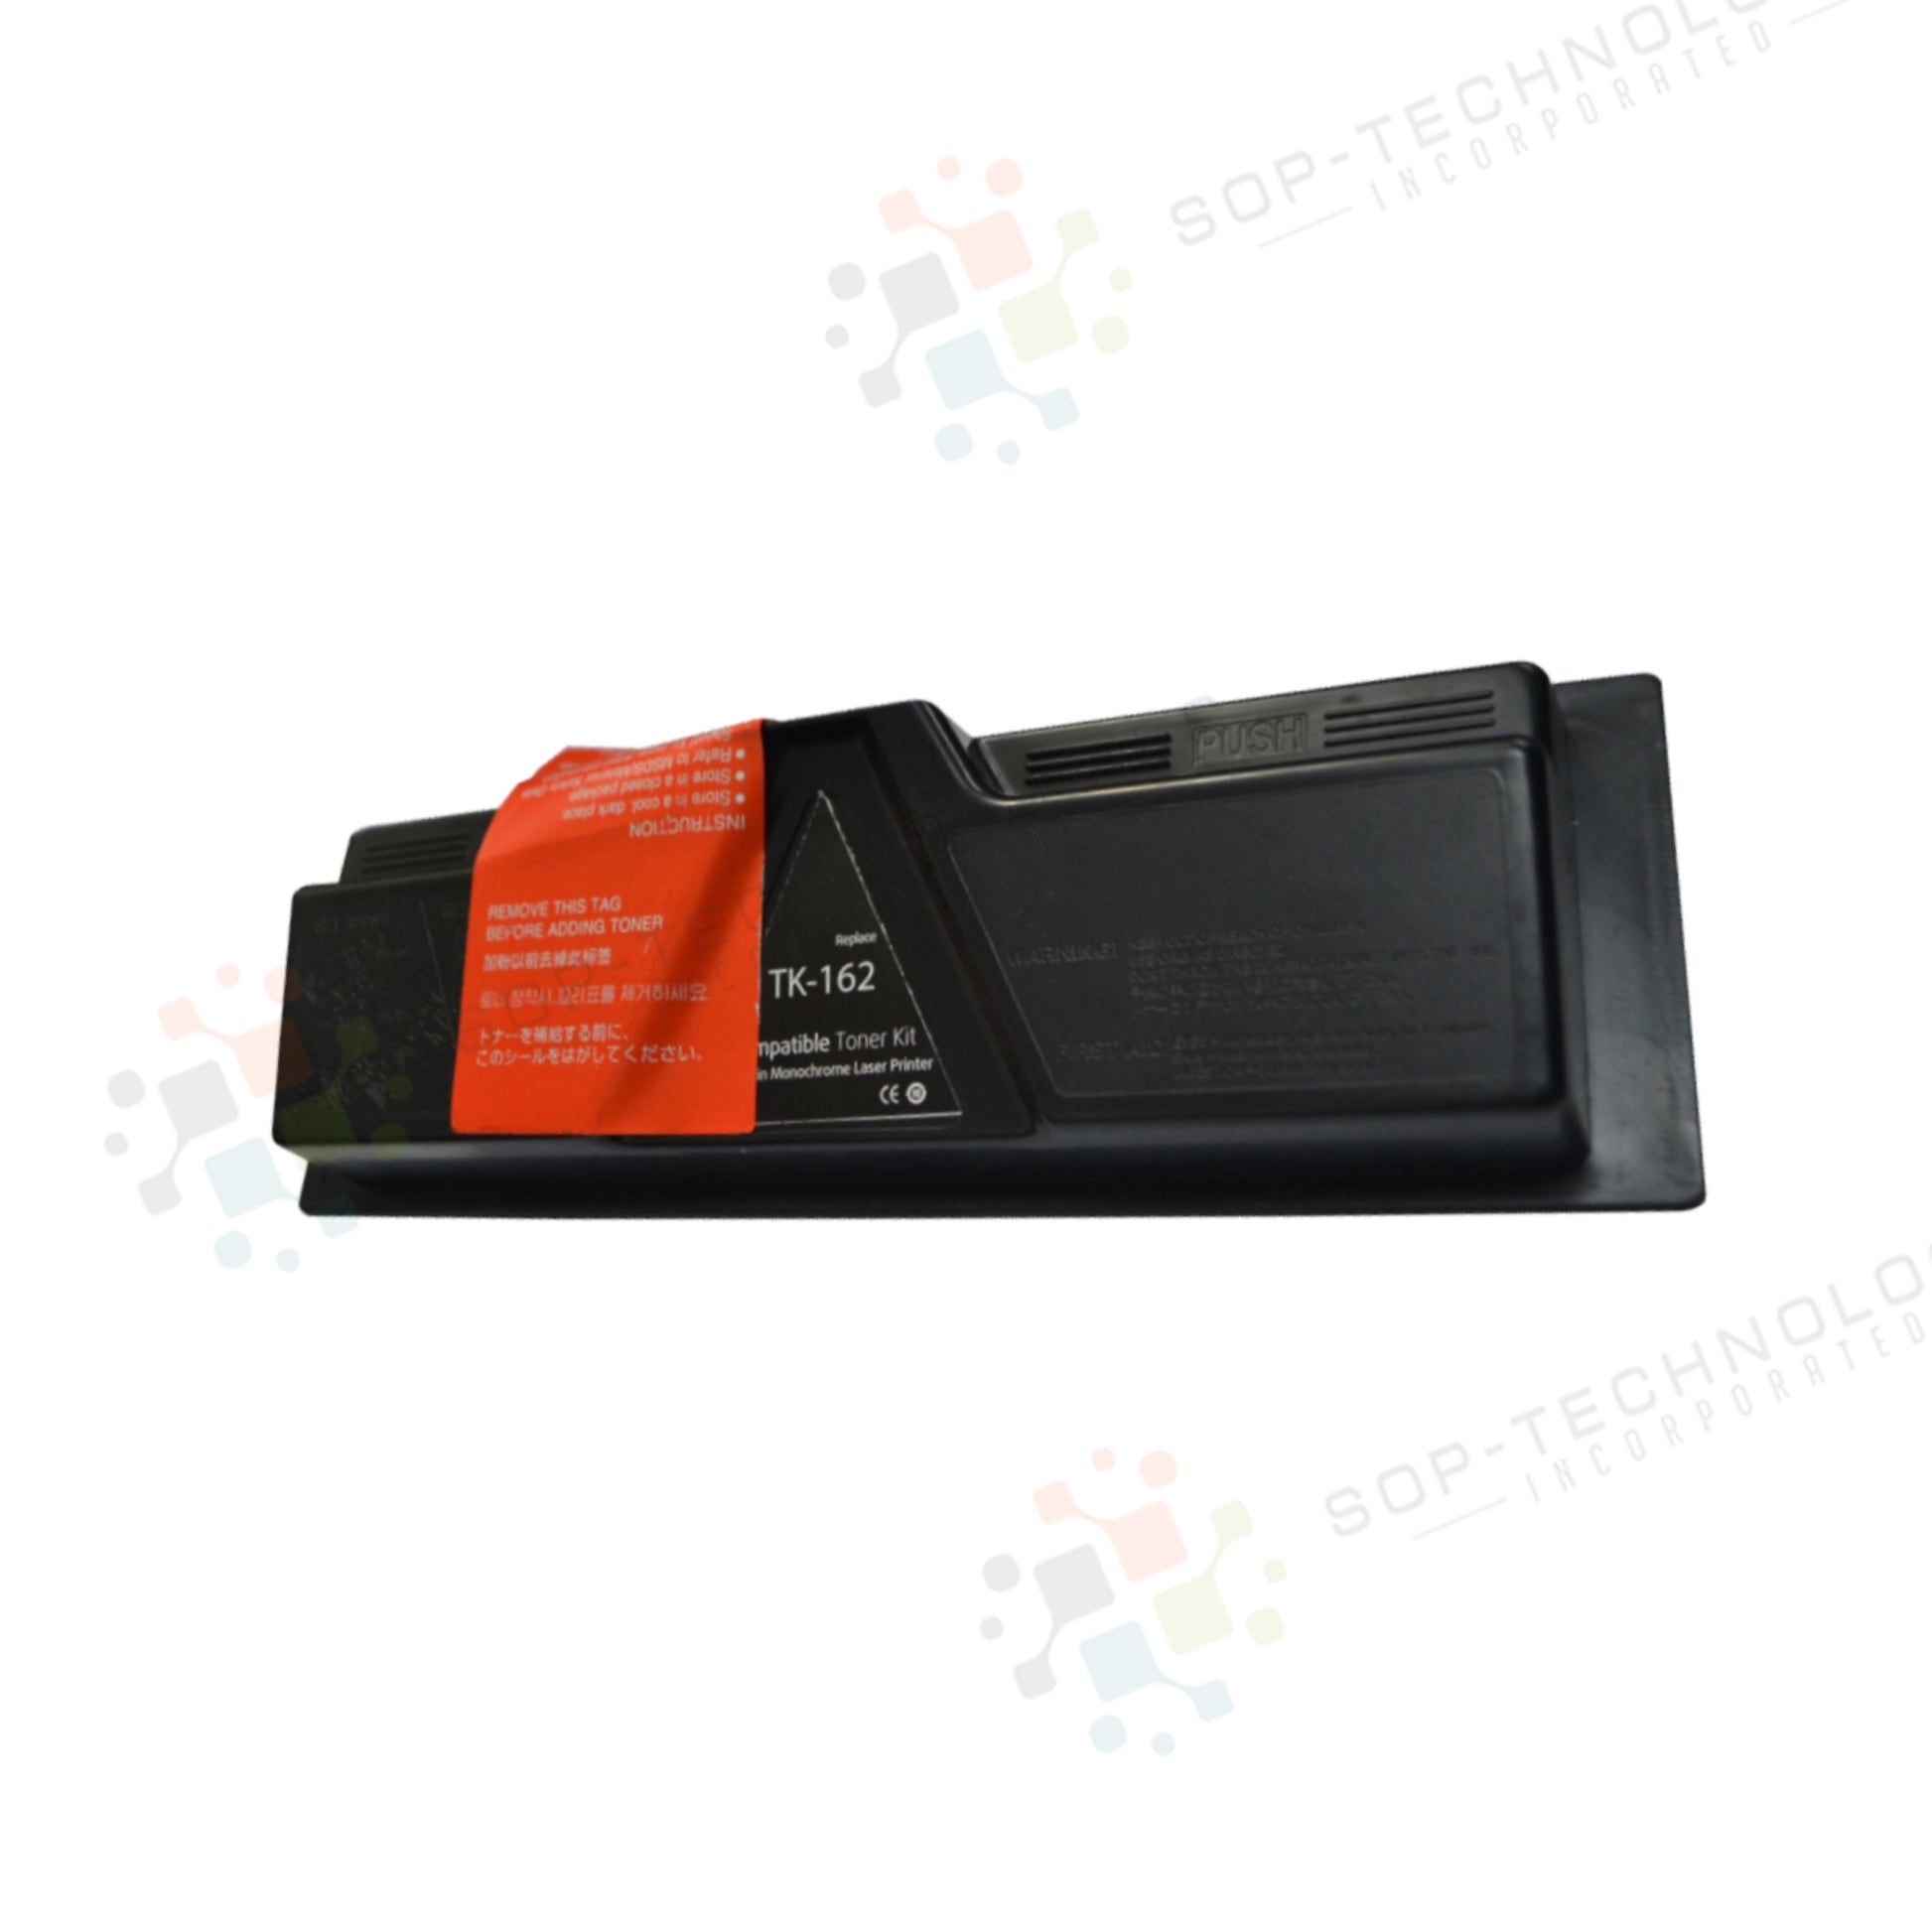 5 Pack Toner Kit for Kyocera FS-1120D - SOP-TECHNOLOGIES, INC.